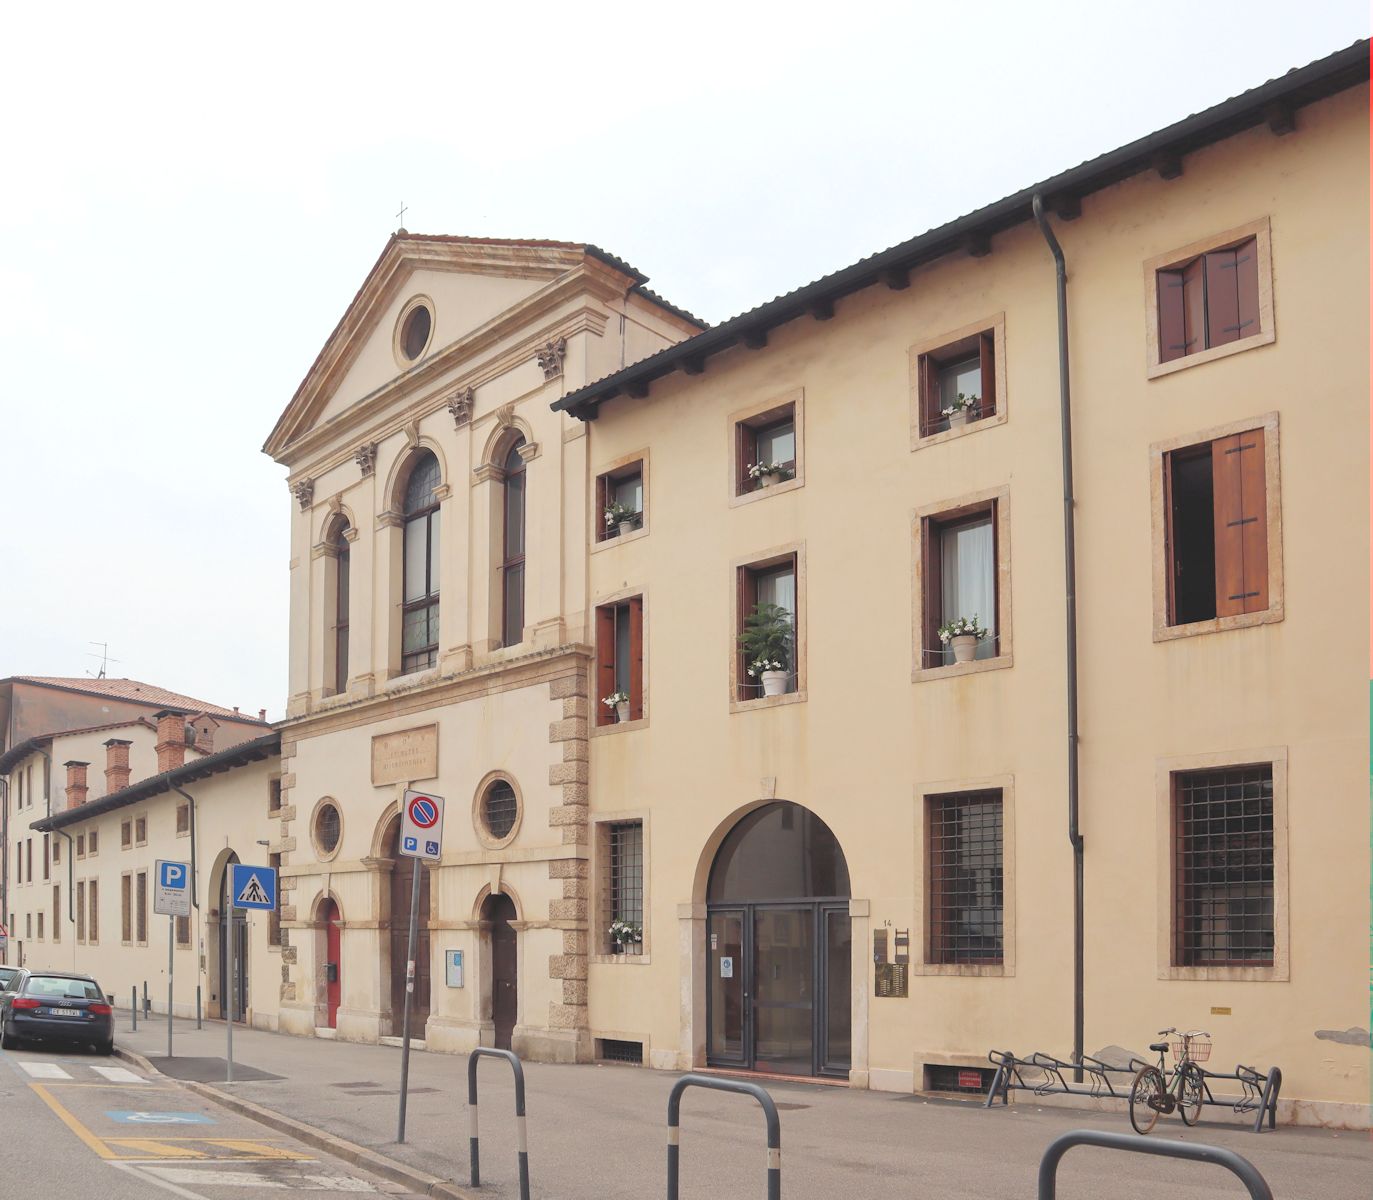 Kirche della Misericordia in Vicenza